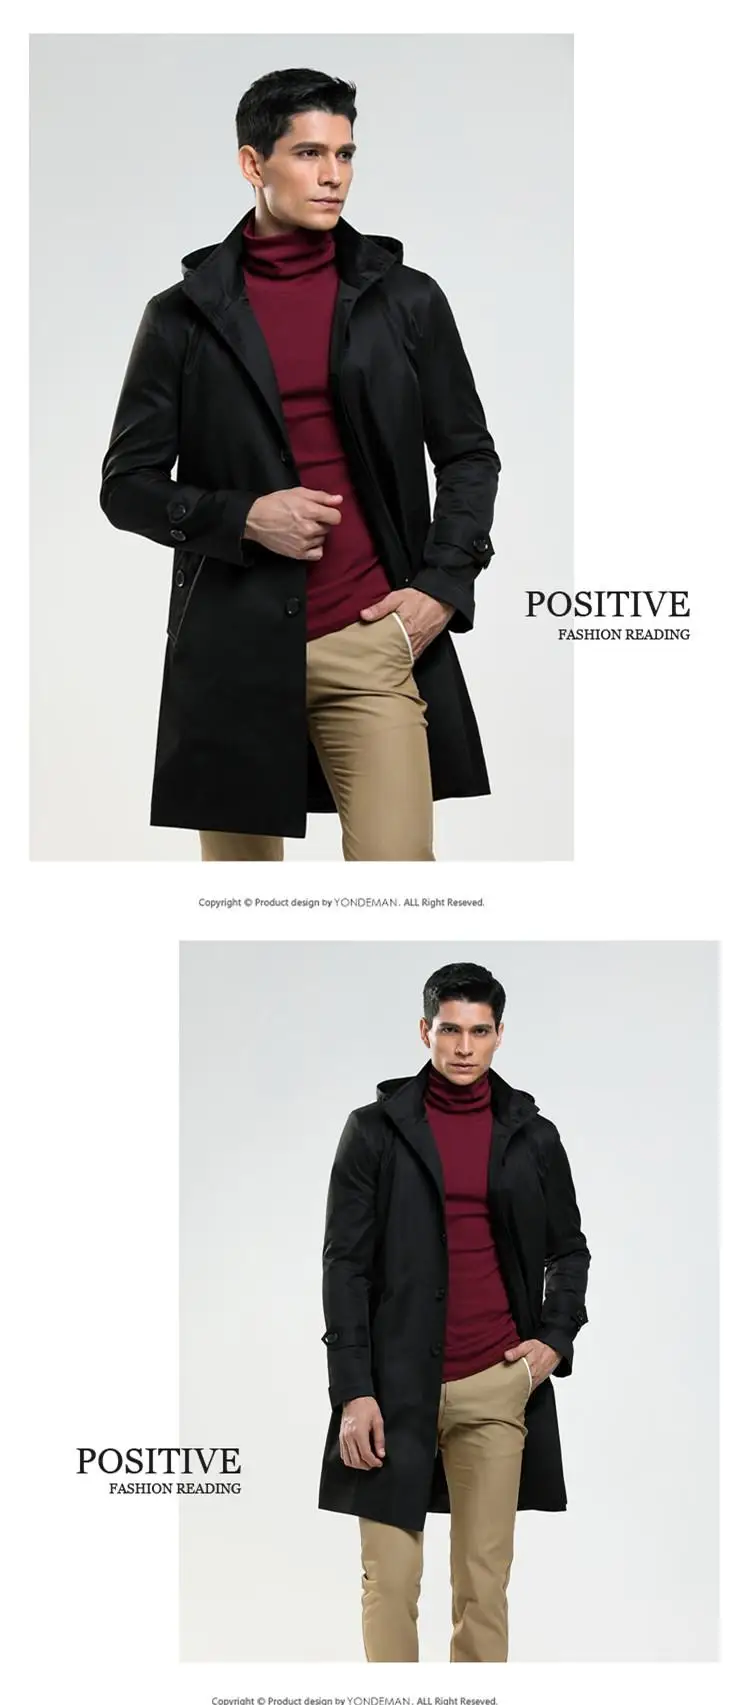 AIMENWANT однобортный мужской плащ с капюшоном, Подгонянный размер, осеннее пальто, английское черное пальто, Тренч, мужская верхняя одежда